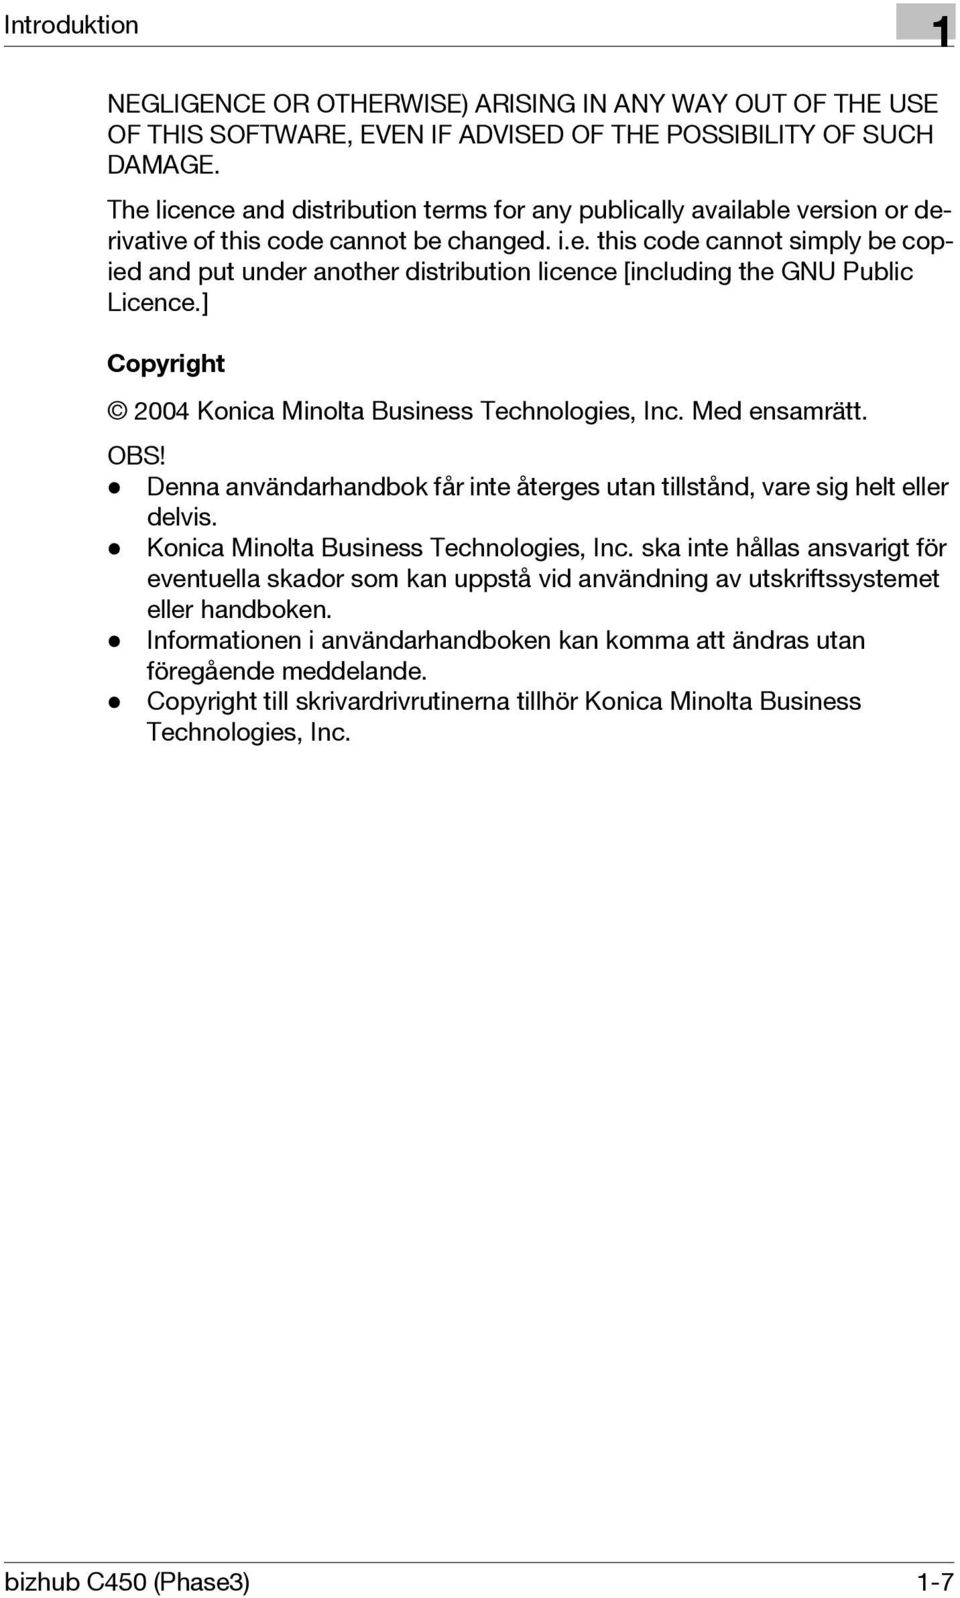 ] Copyright 2004 Konica Minolta Business Technologies, Inc. Med ensamrätt. OBS! - Denna användarhandbok får inte återges utan tillstånd, vare sig helt eller delvis.